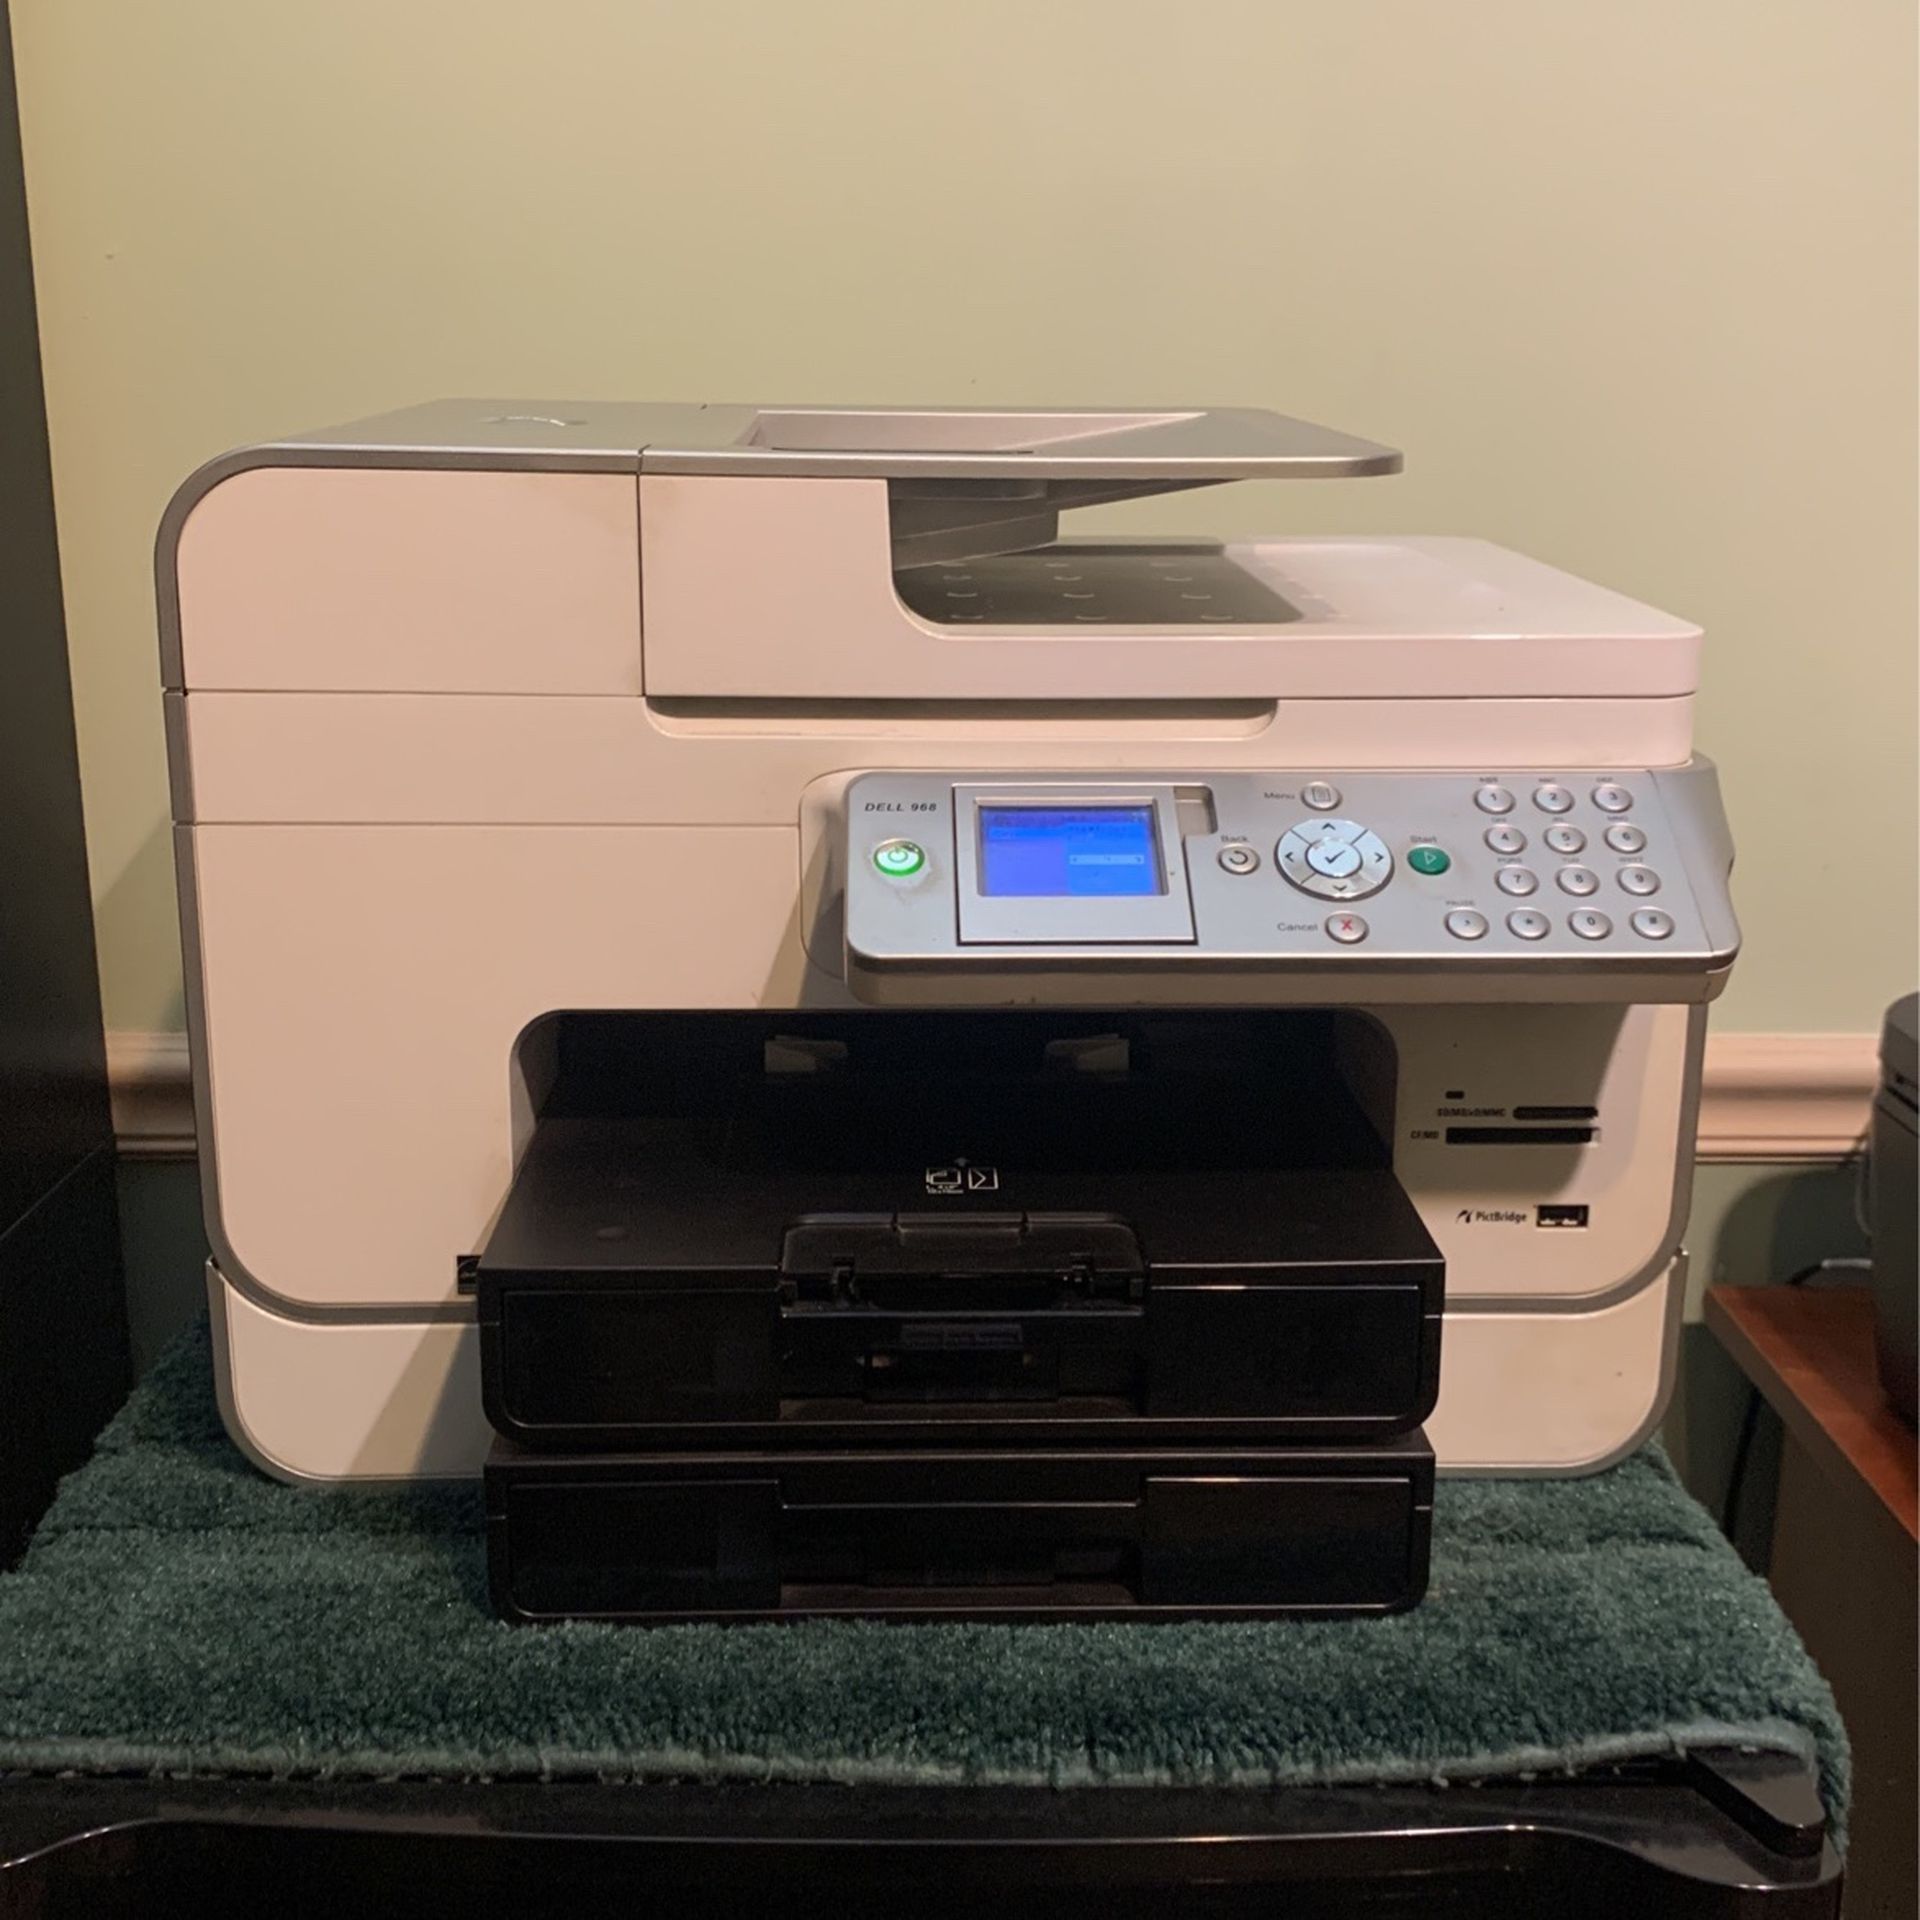 Dell 998 Printer